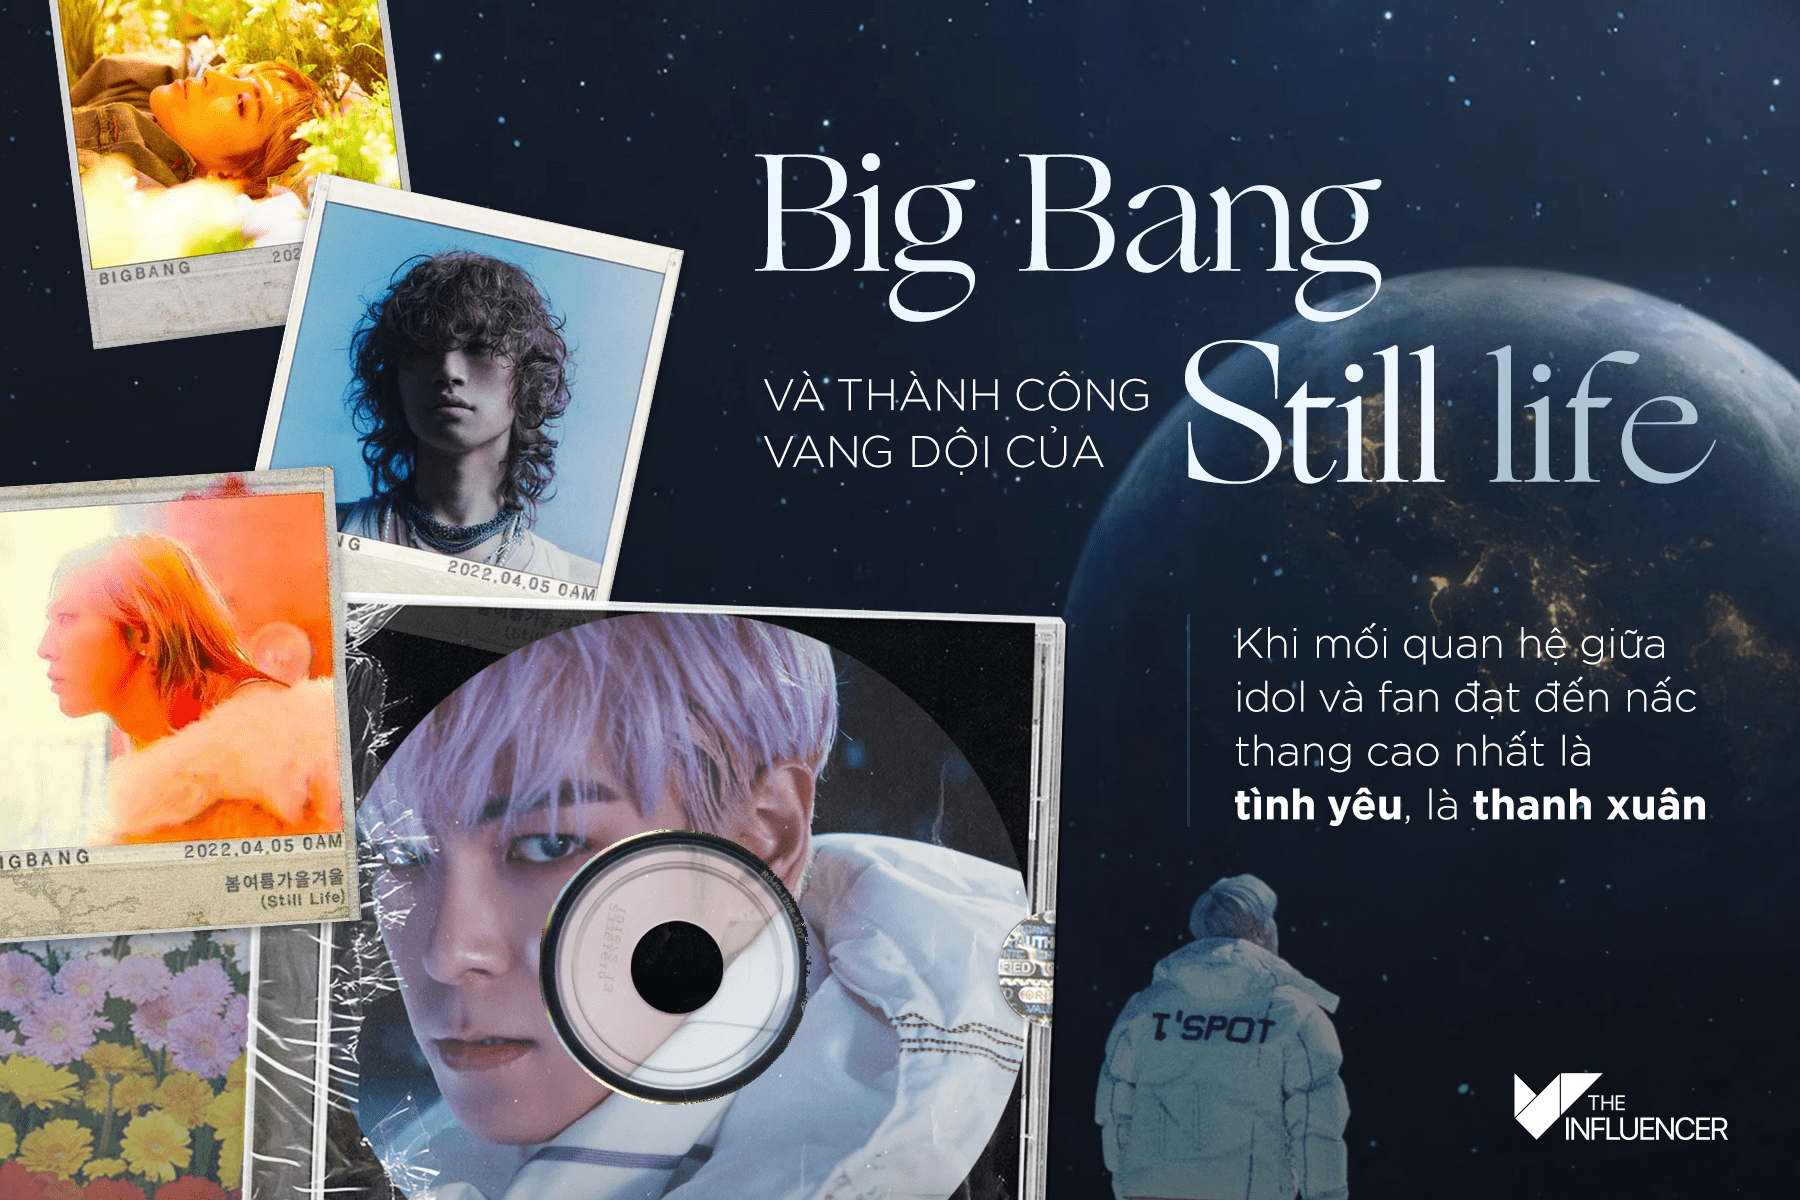 Big Bang và thành công vang dội của Still life - Khi mối quan hệ giữa idol và fan đạt đến nấc thang cao nhất là tình yêu, là thanh xuân